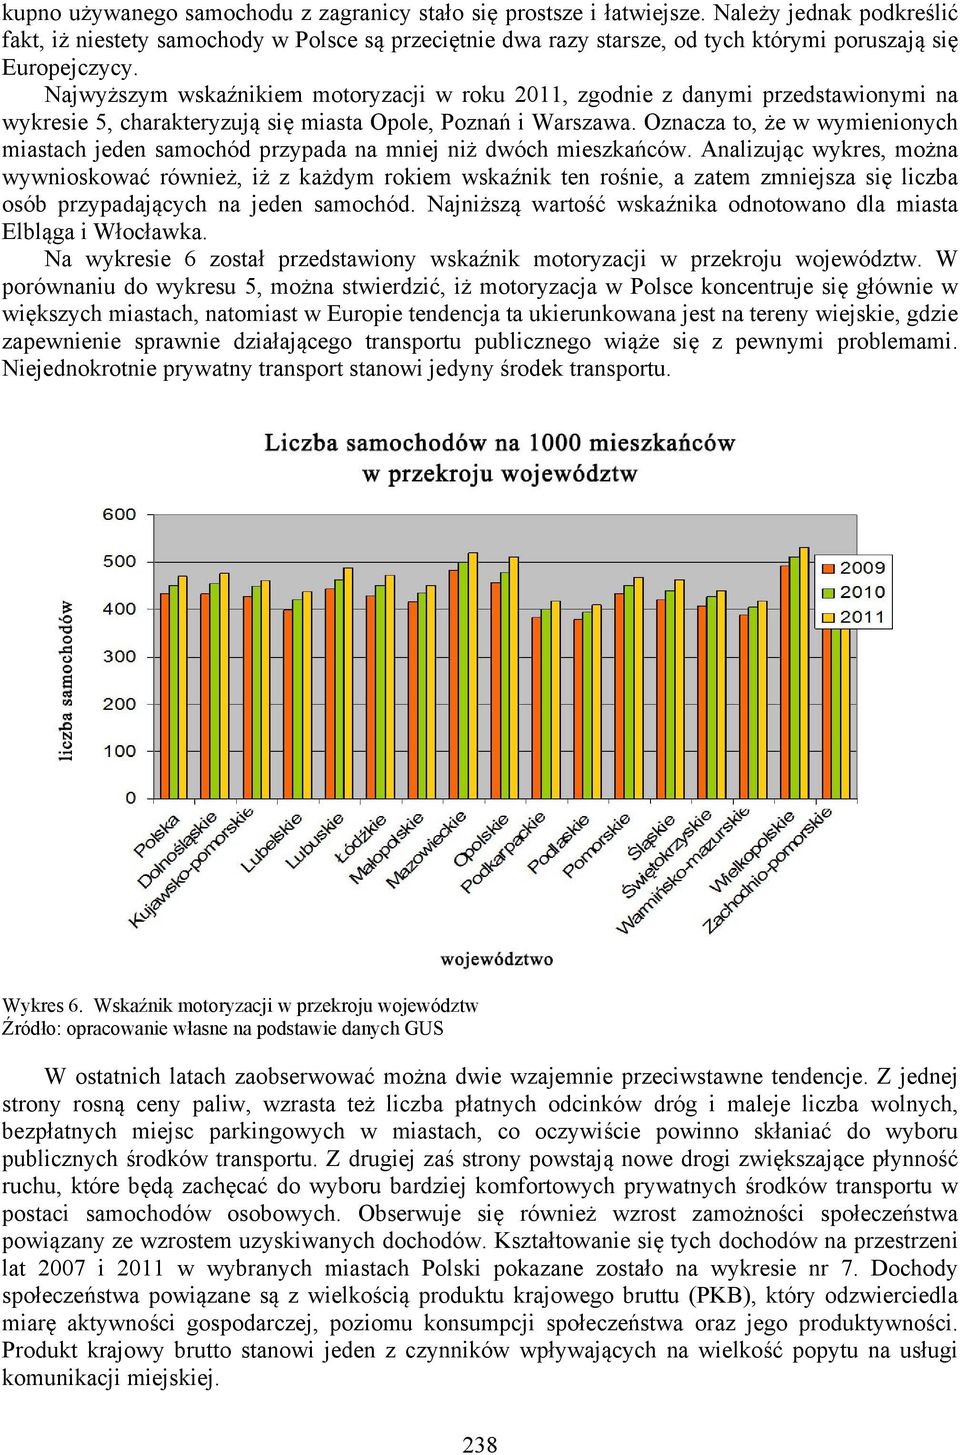 Najwyższym wskaźnikiem motoryzacji w roku 2011, zgodnie z danymi przedstawionymi na wykresie 5, charakteryzują się miasta Opole, Poznań i Warszawa.